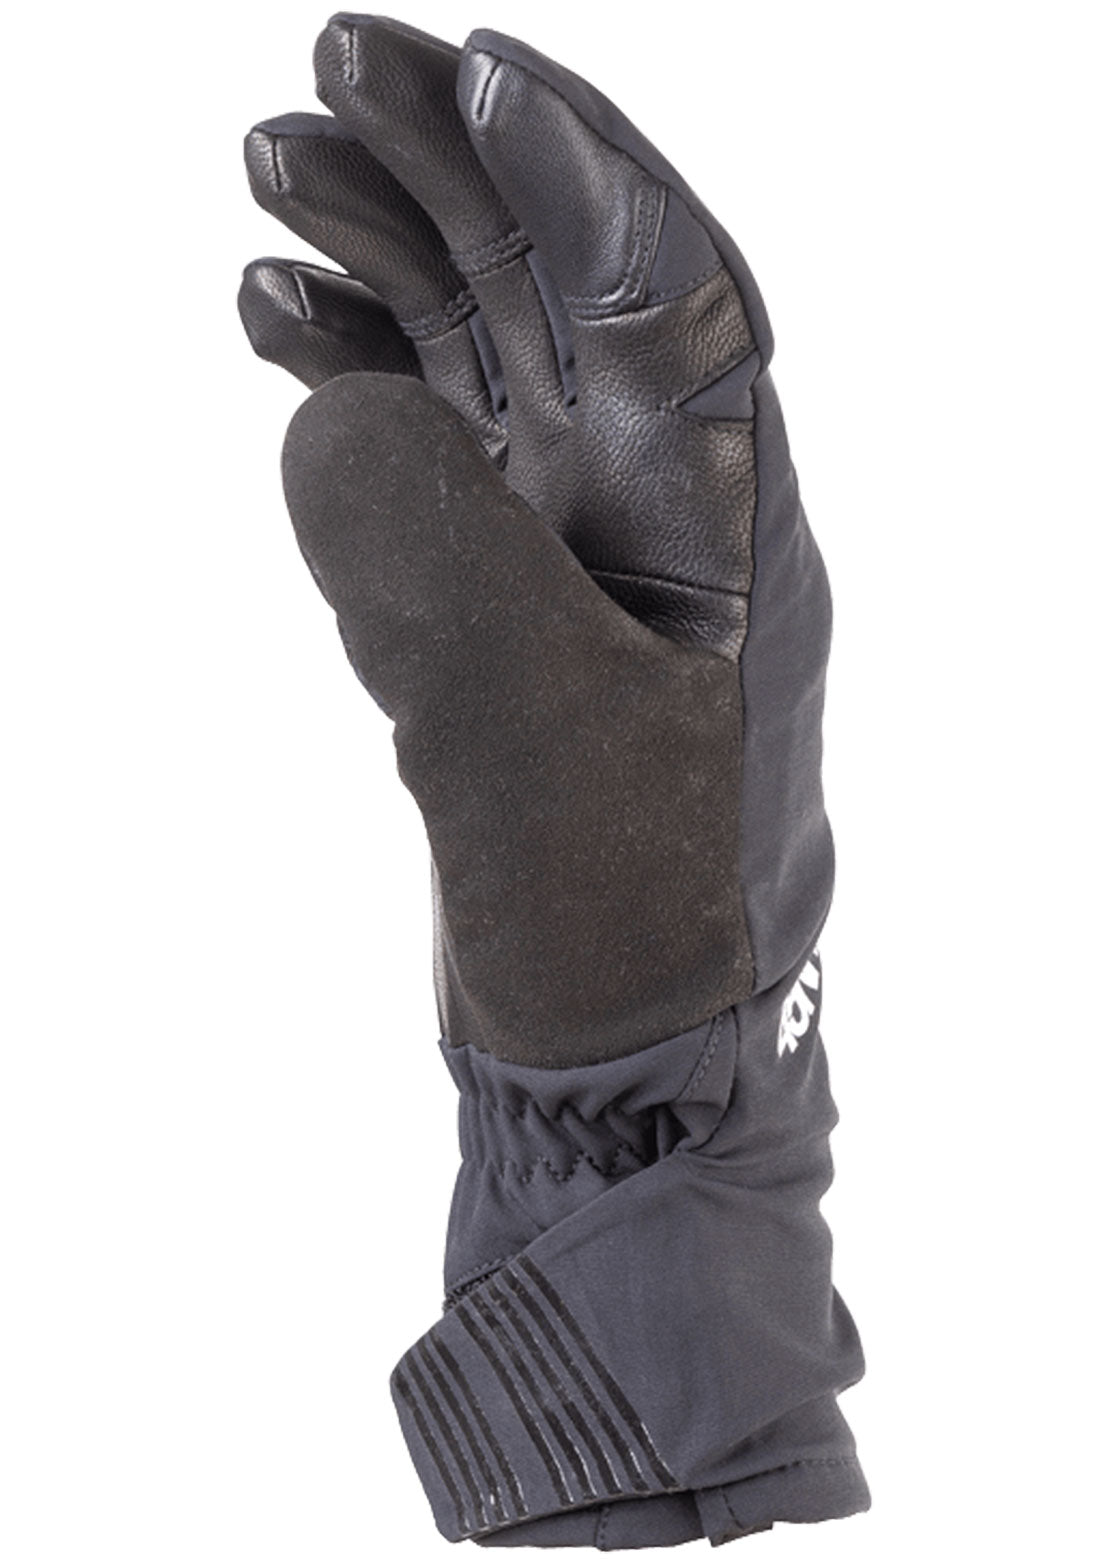 45NRTH Sturmfist 5 Full Finger Gloves Black